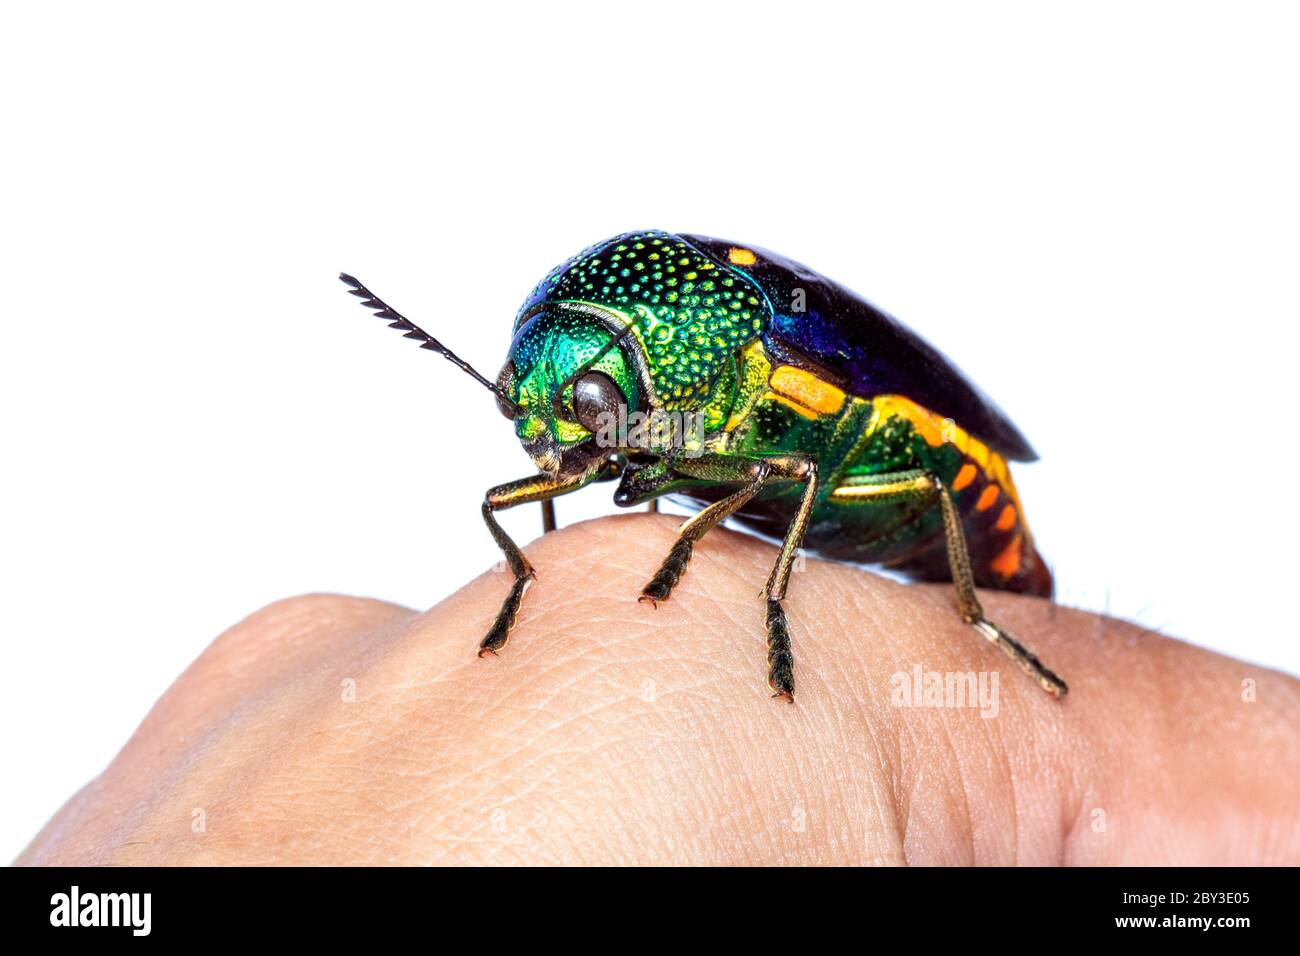 Abbildung eines grünbeinigen Metallkäfer (Sternocera aequisignata) oder eines Edelkäfer oder eines metallischen Holzkäfer auf der Handrückseite. Insekt. Tier Stockfoto